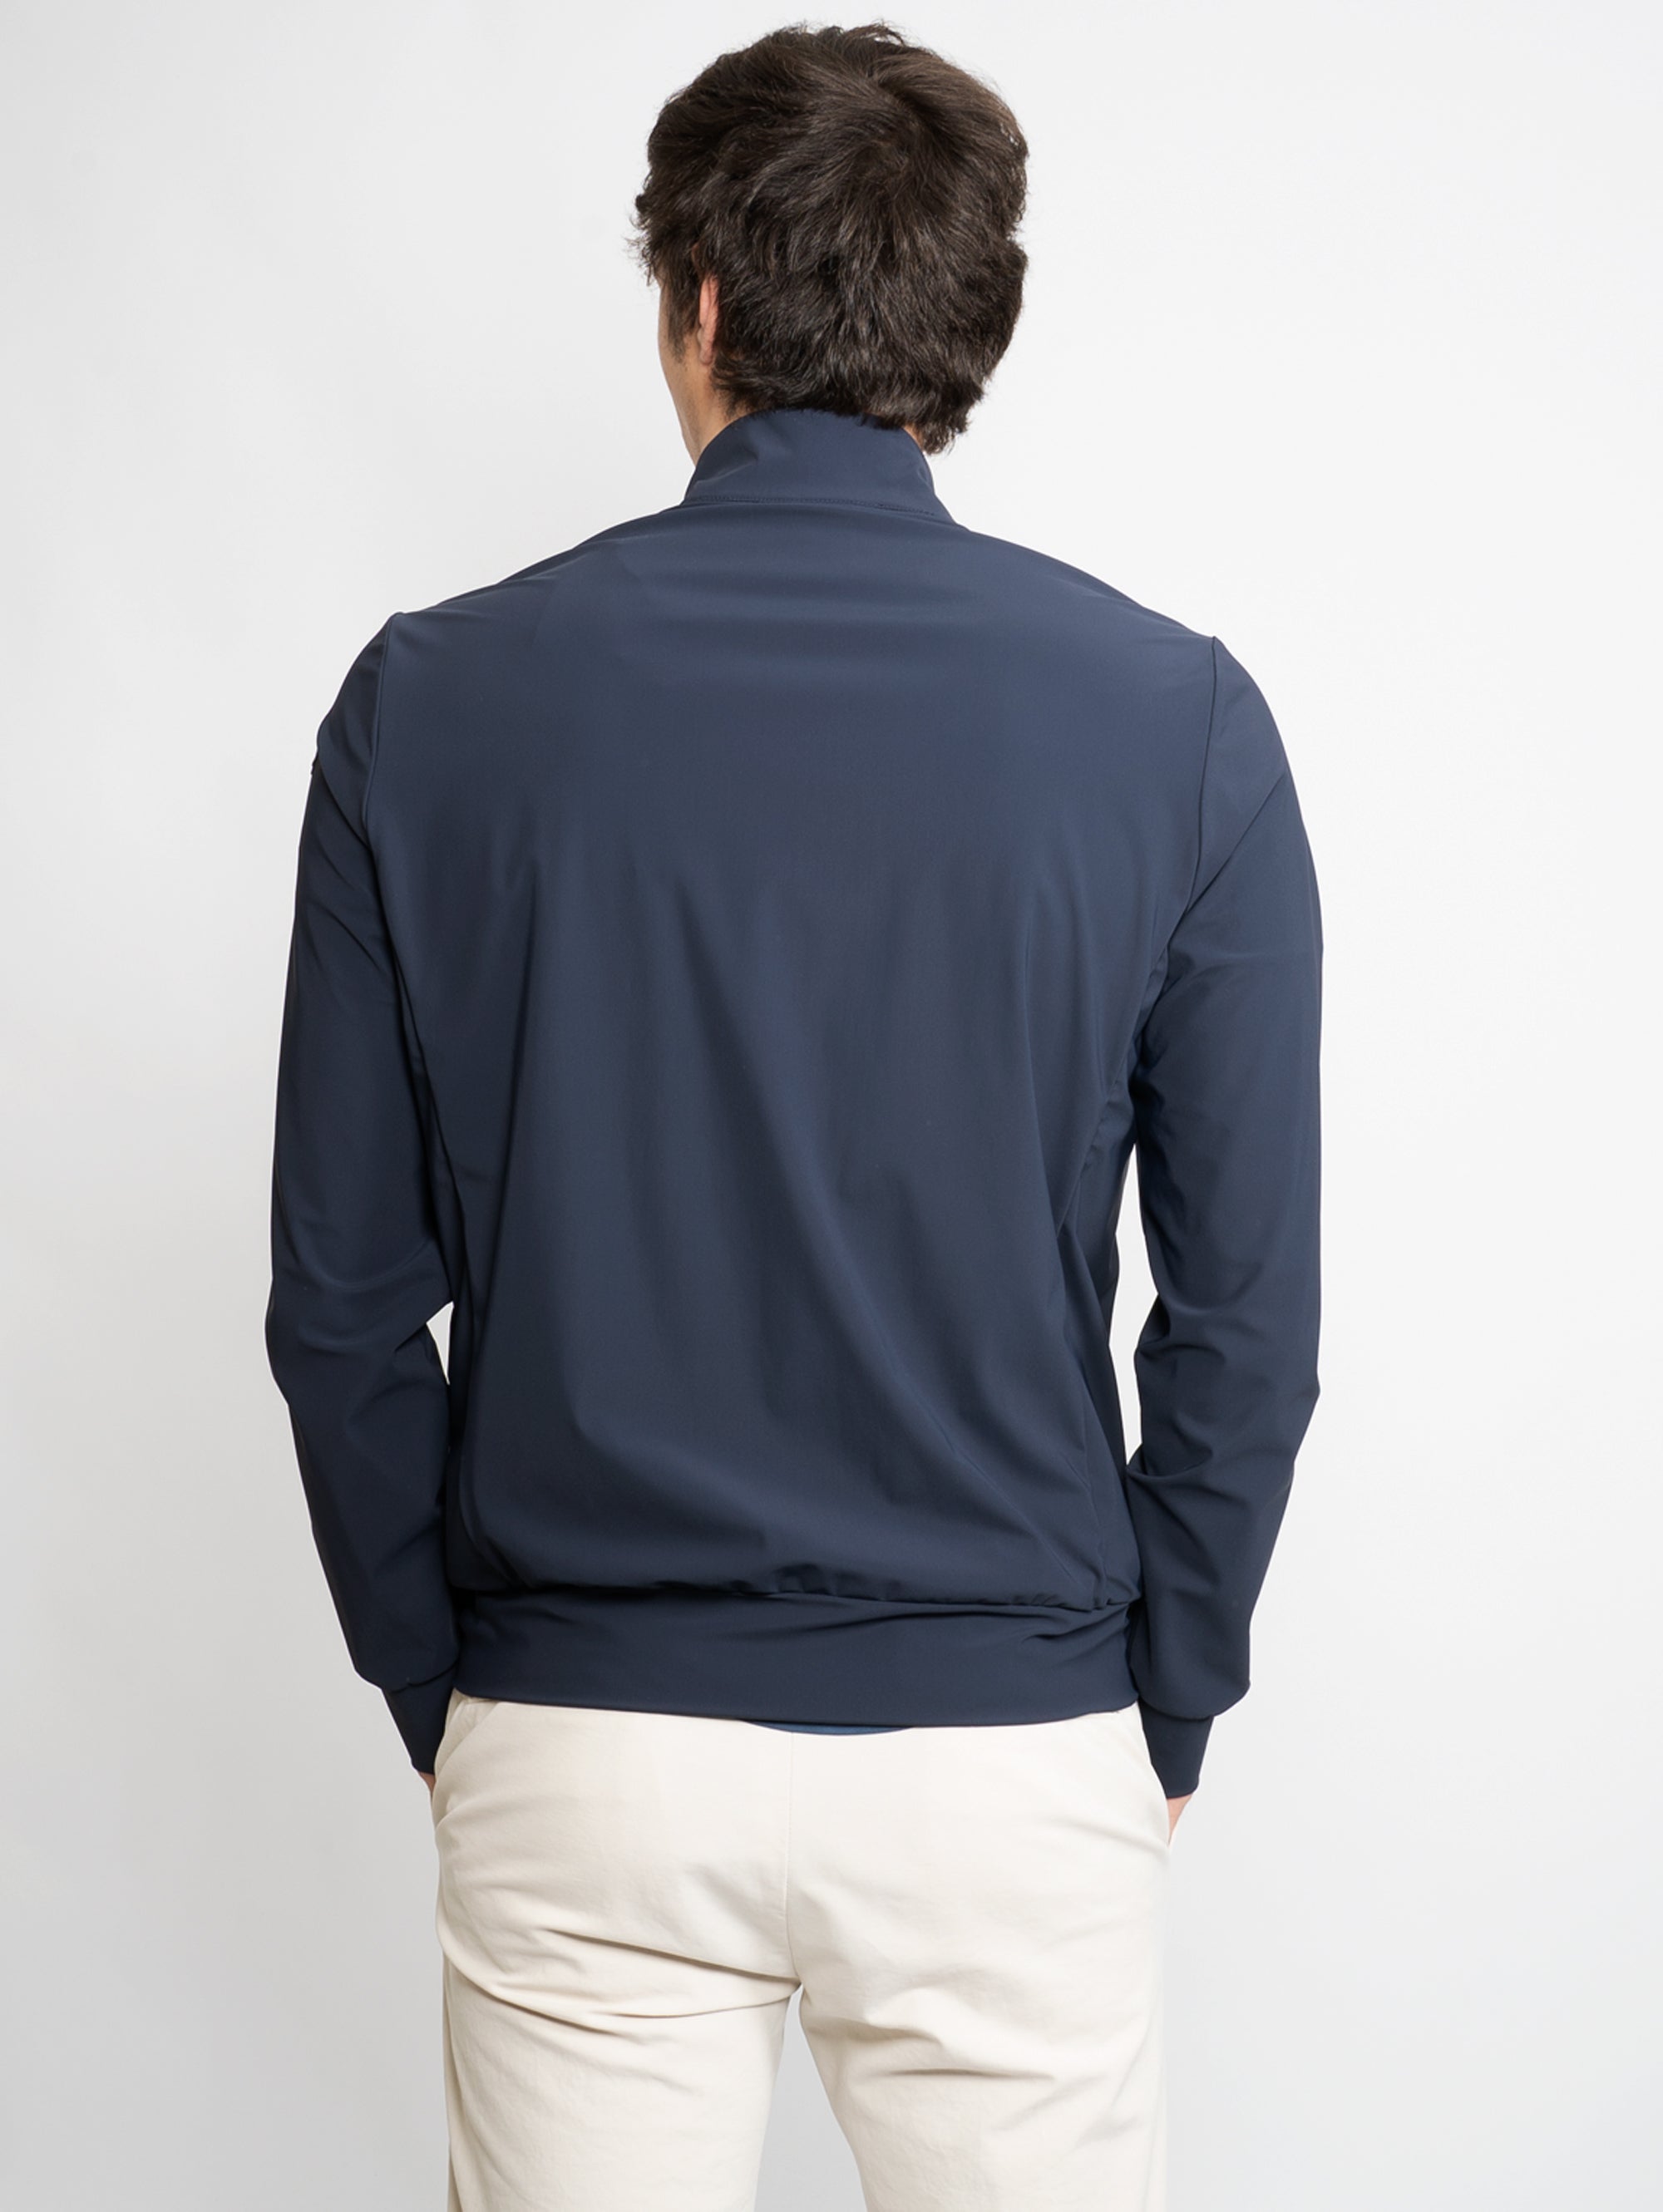 Lycra-Sweatshirt mit blauem Reißverschluss